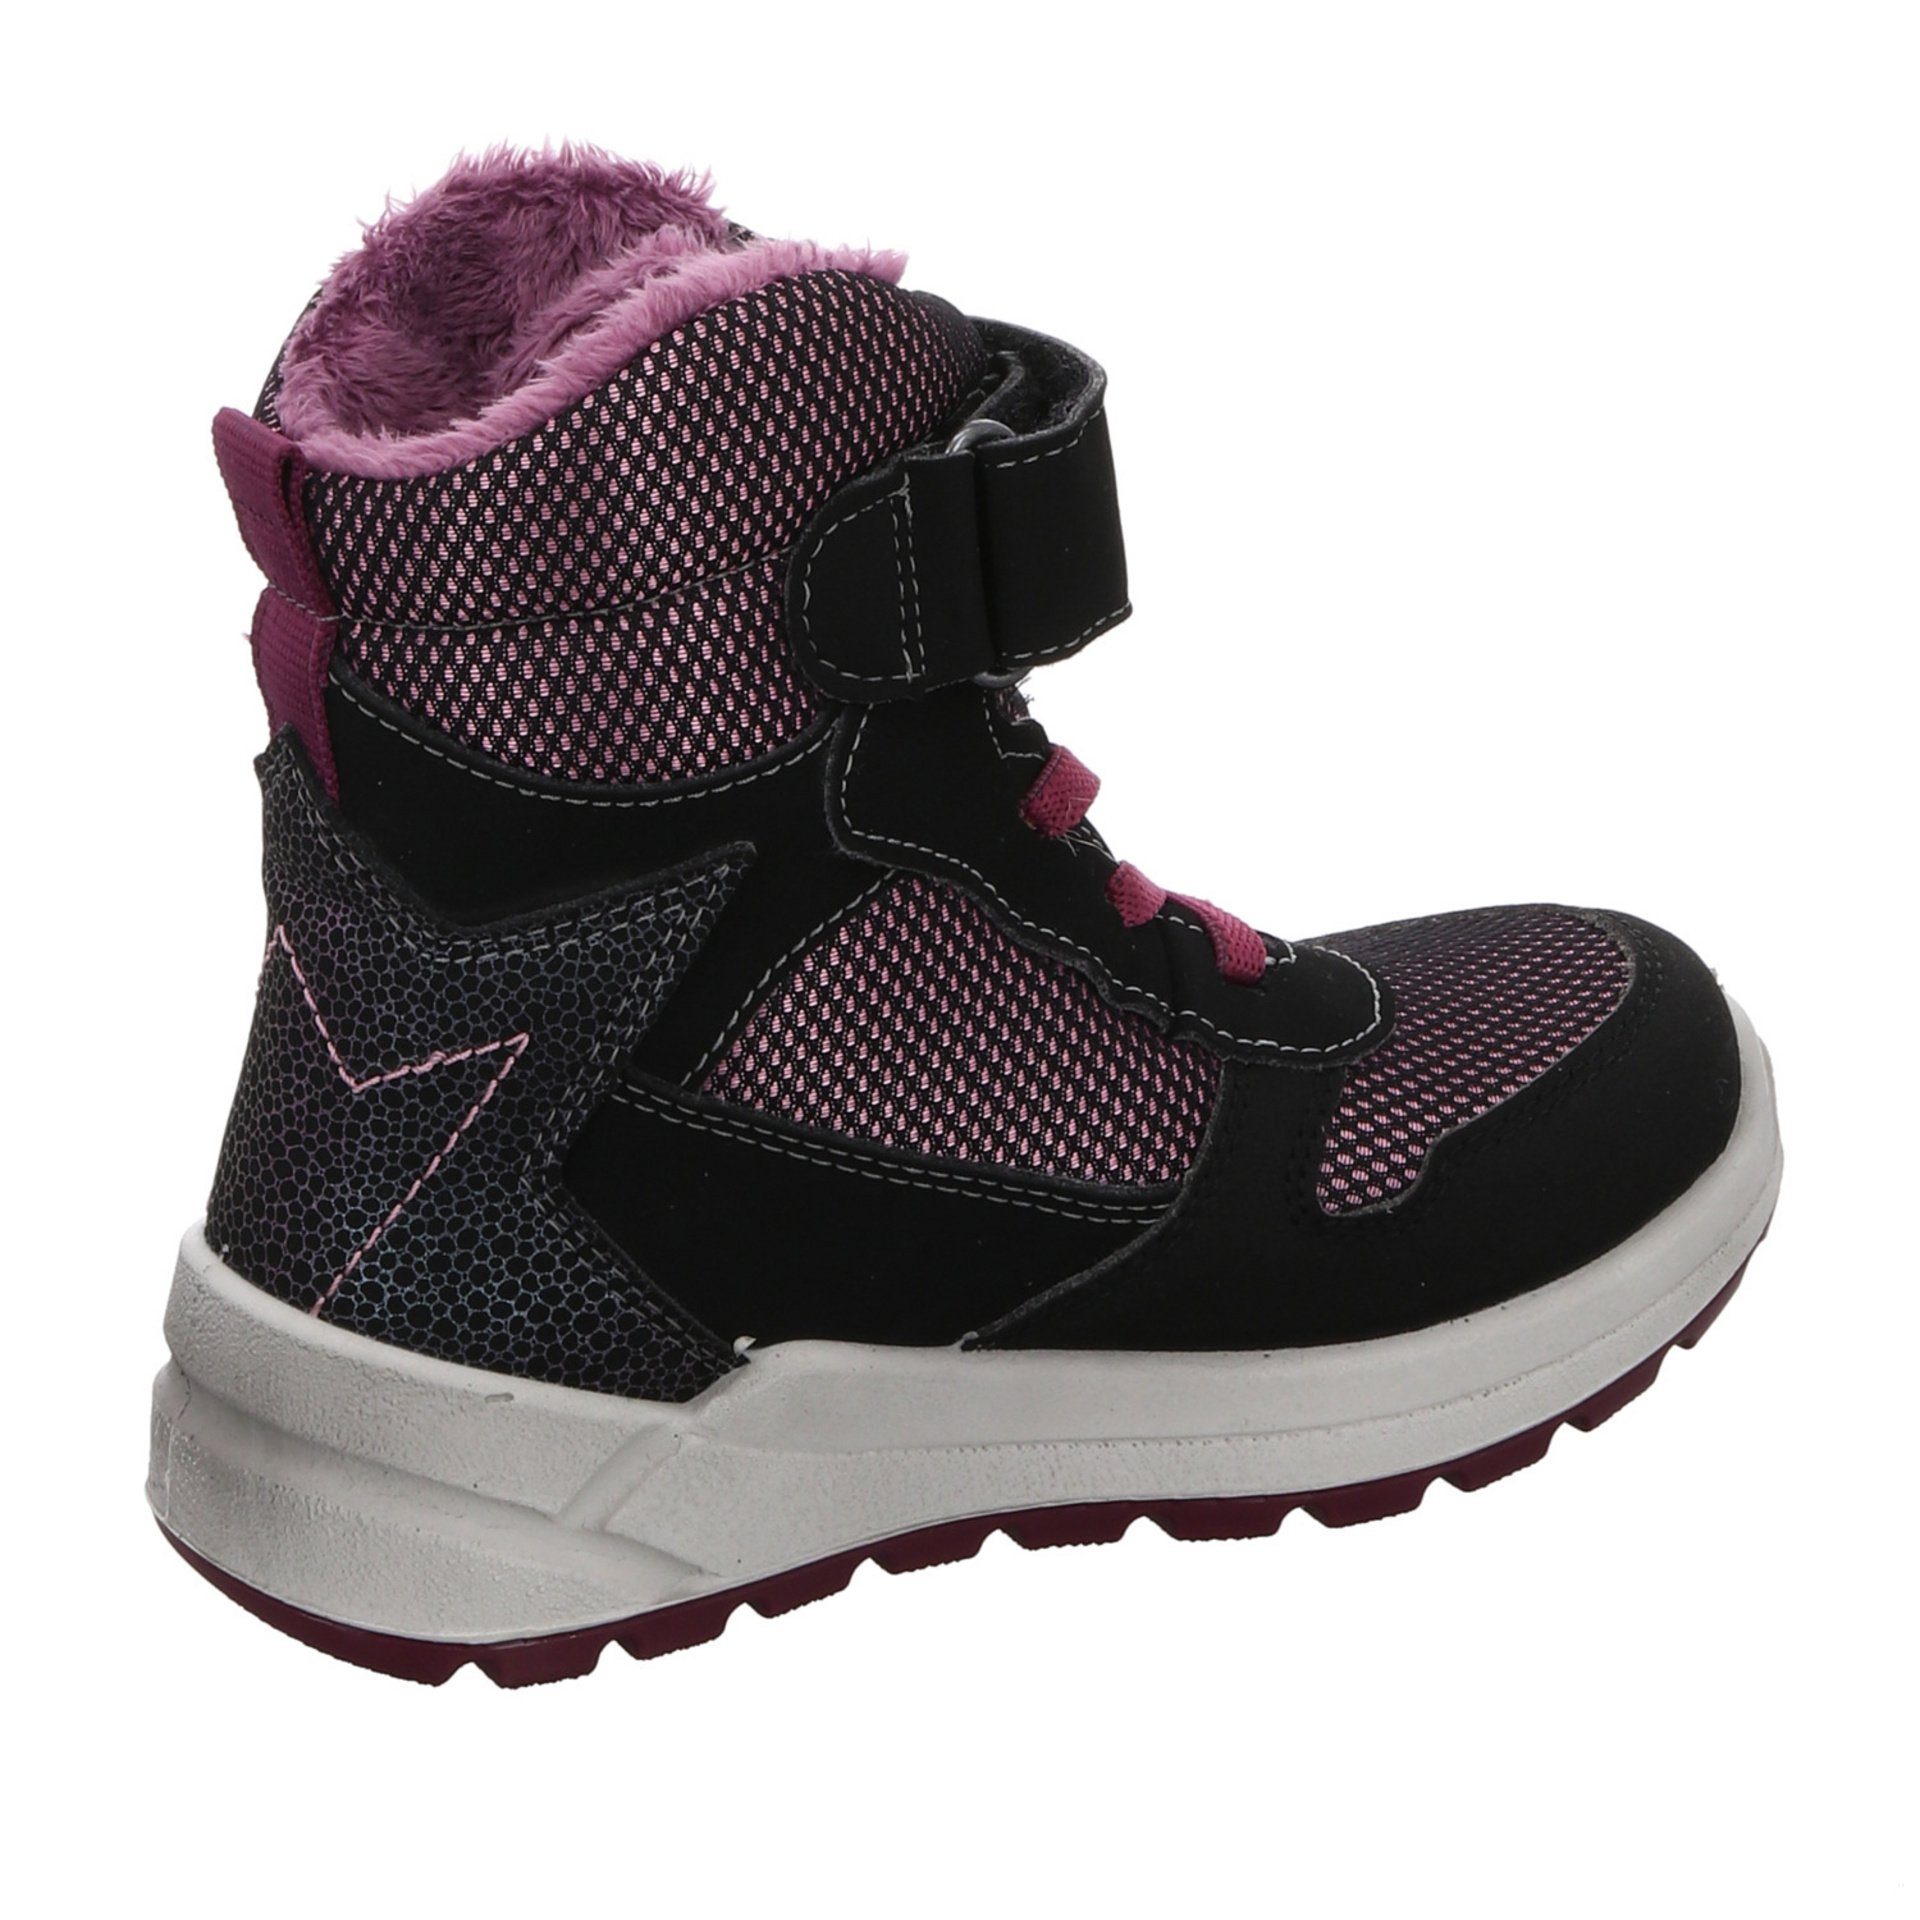 Gela Mädchen Boots schwarz Synthetikkombination Kinderschuhe Stiefelette Schuhe Stiefel Ricosta